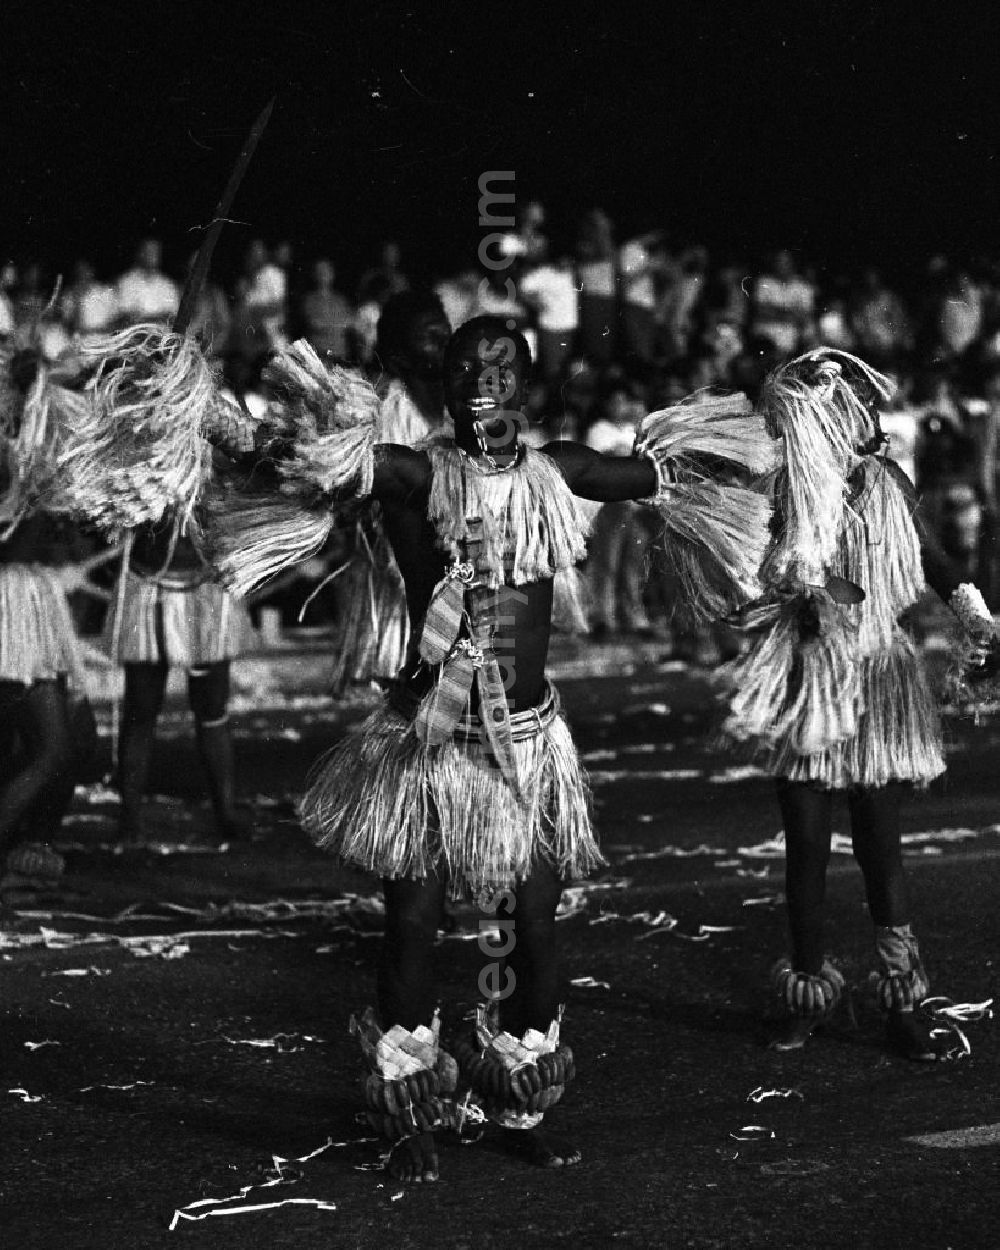 GDR photo archive: Havanna - Internationaler Karneval während der XI. Weltfestspiele vom 28.07. - 05.08.1978. Die Tanzformation der Delegation aus Mosambik / Afrika. Das Festival stand unter dem Motto: Für antiimperialistische Solidarität, Frieden und Freundschaft. 18.500 Jugendliche aus 145 Ländern nahmen teil, darunter 20